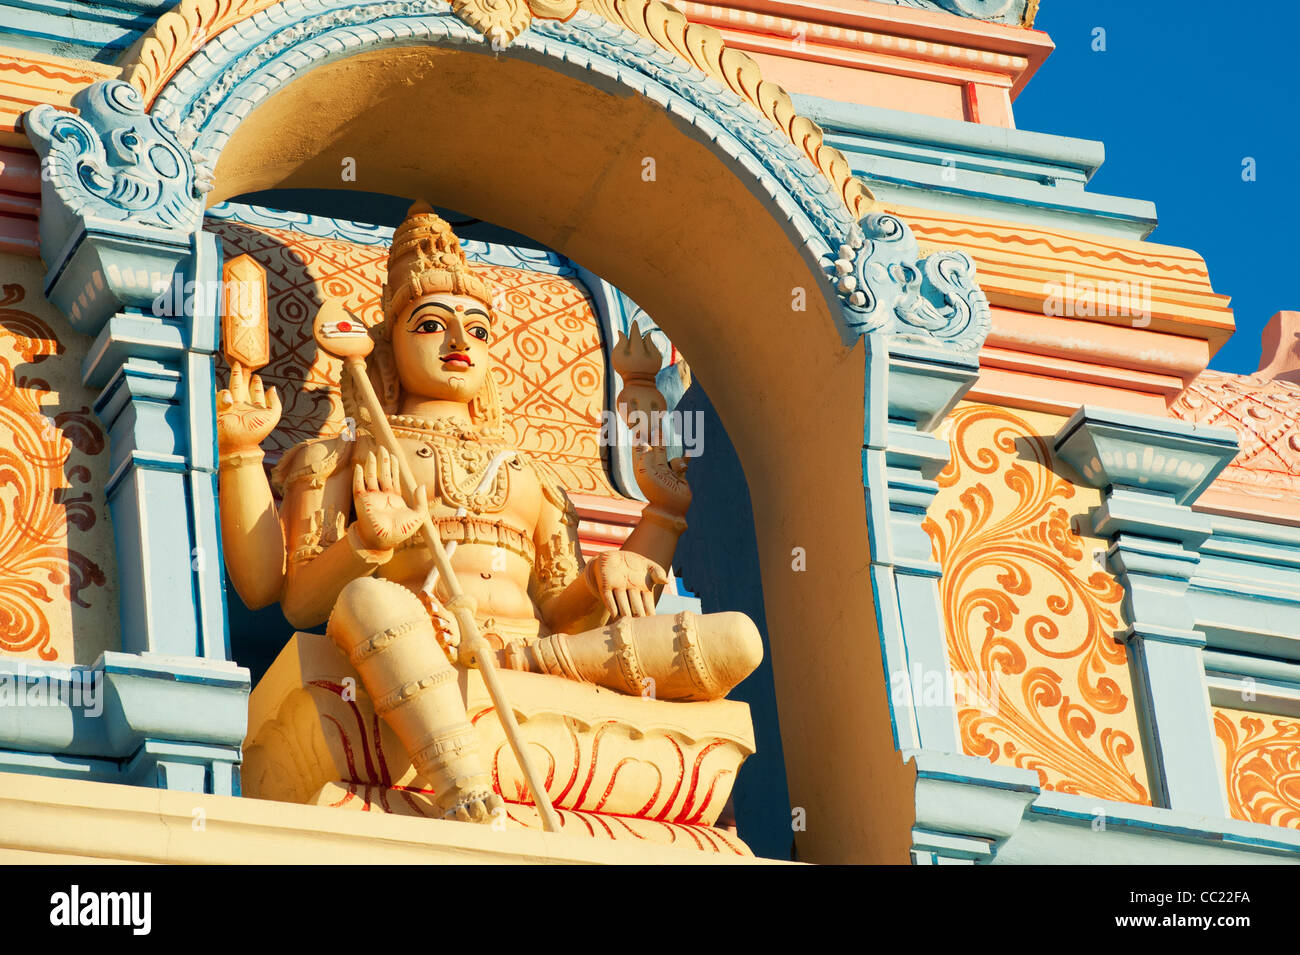 Divinità indù Subramanya statua su un dipinto di archway contro il cielo blu. Puttaparthi, Andhra Pradesh, India Foto Stock